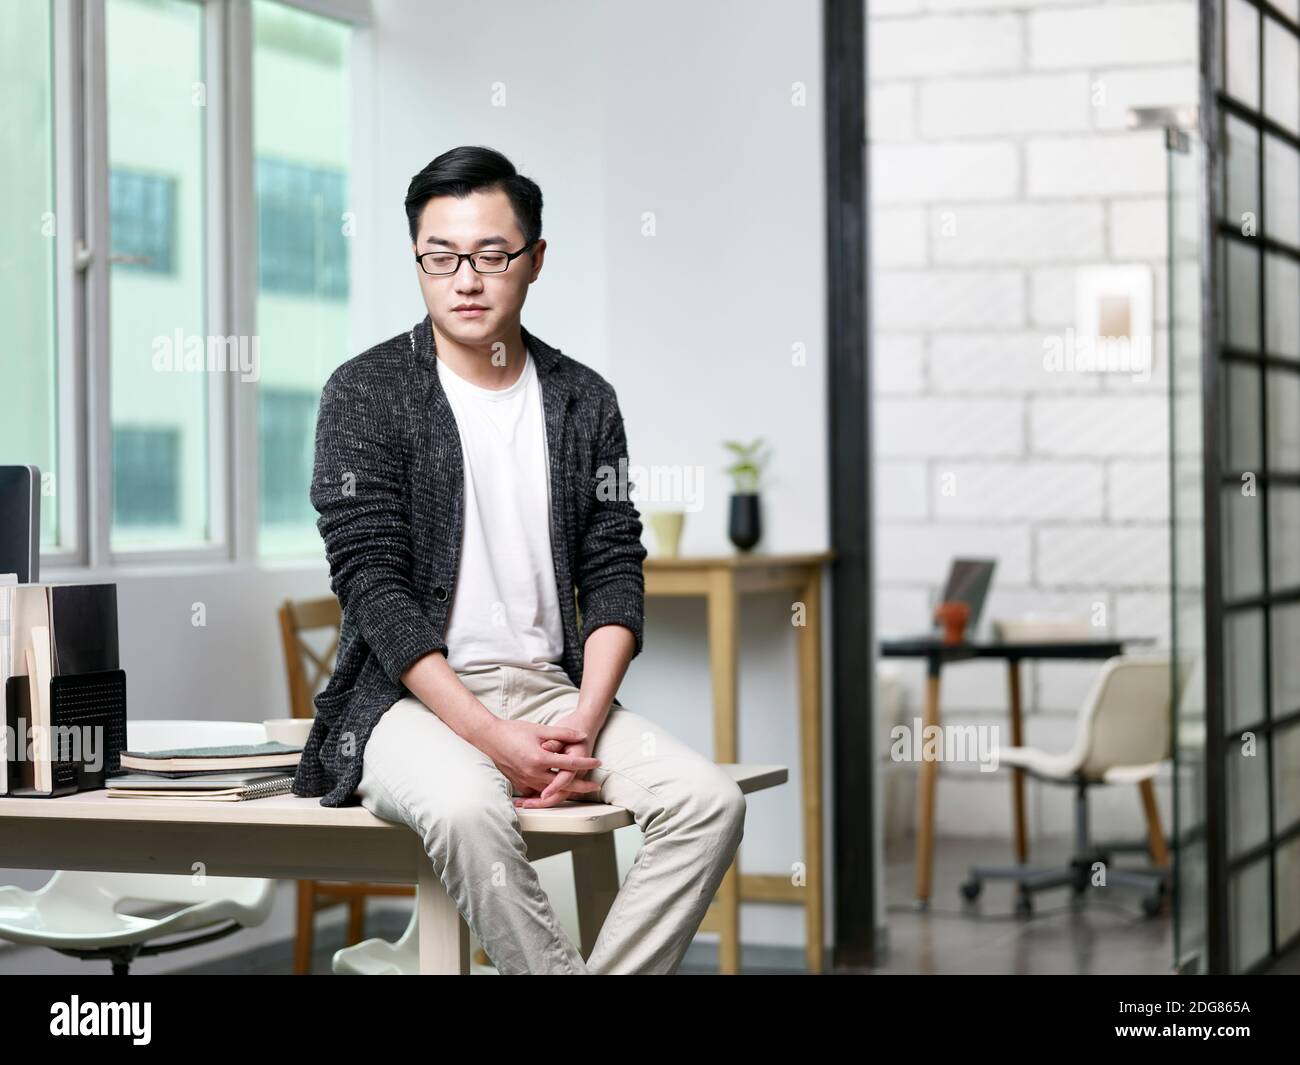 retrato de un joven empresario asiático sentado en el escritorio de la oficina mirando hacia abajo Foto de stock